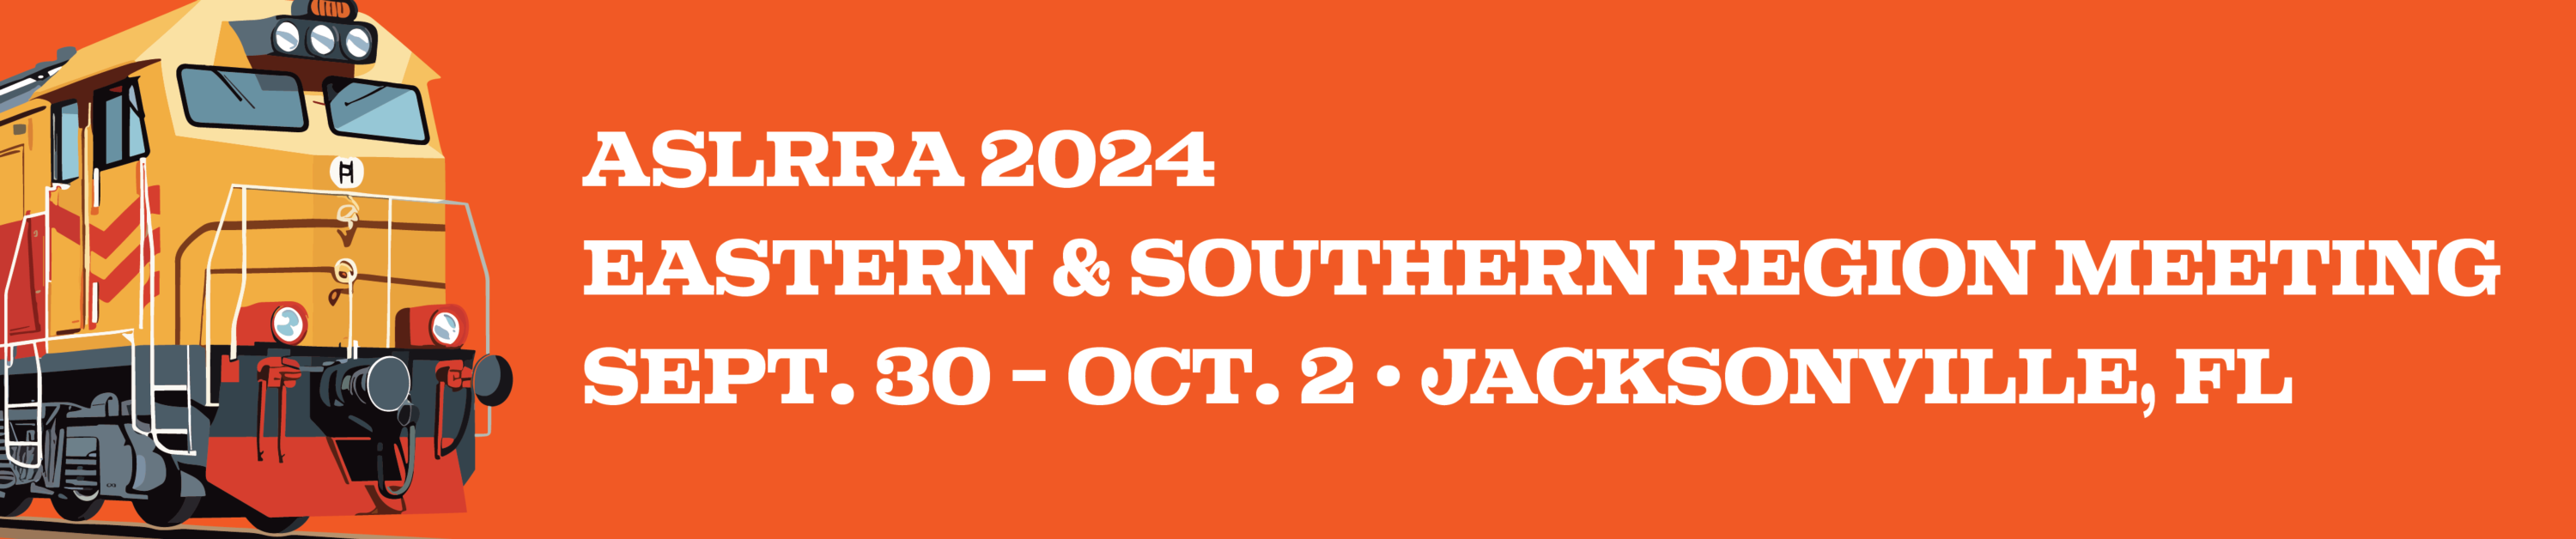 ASLRRA 2024 Eastern & Southern Region Meeting